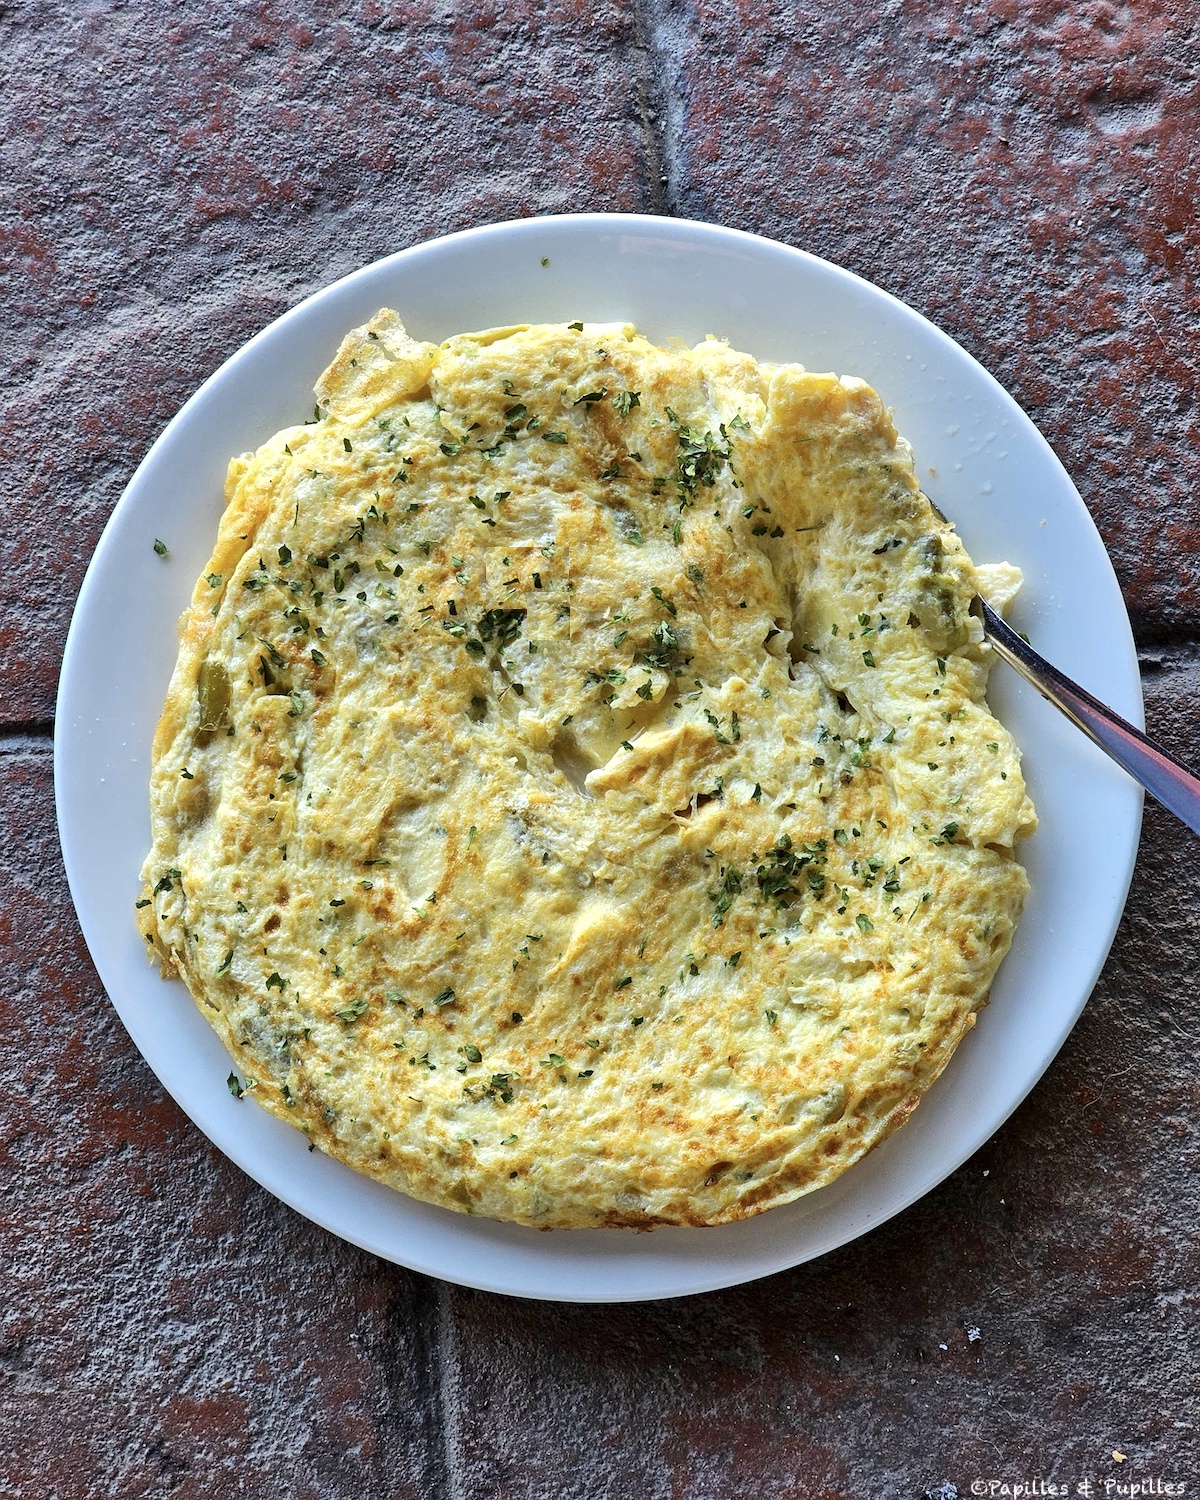 Poêle Cœur D'omelette